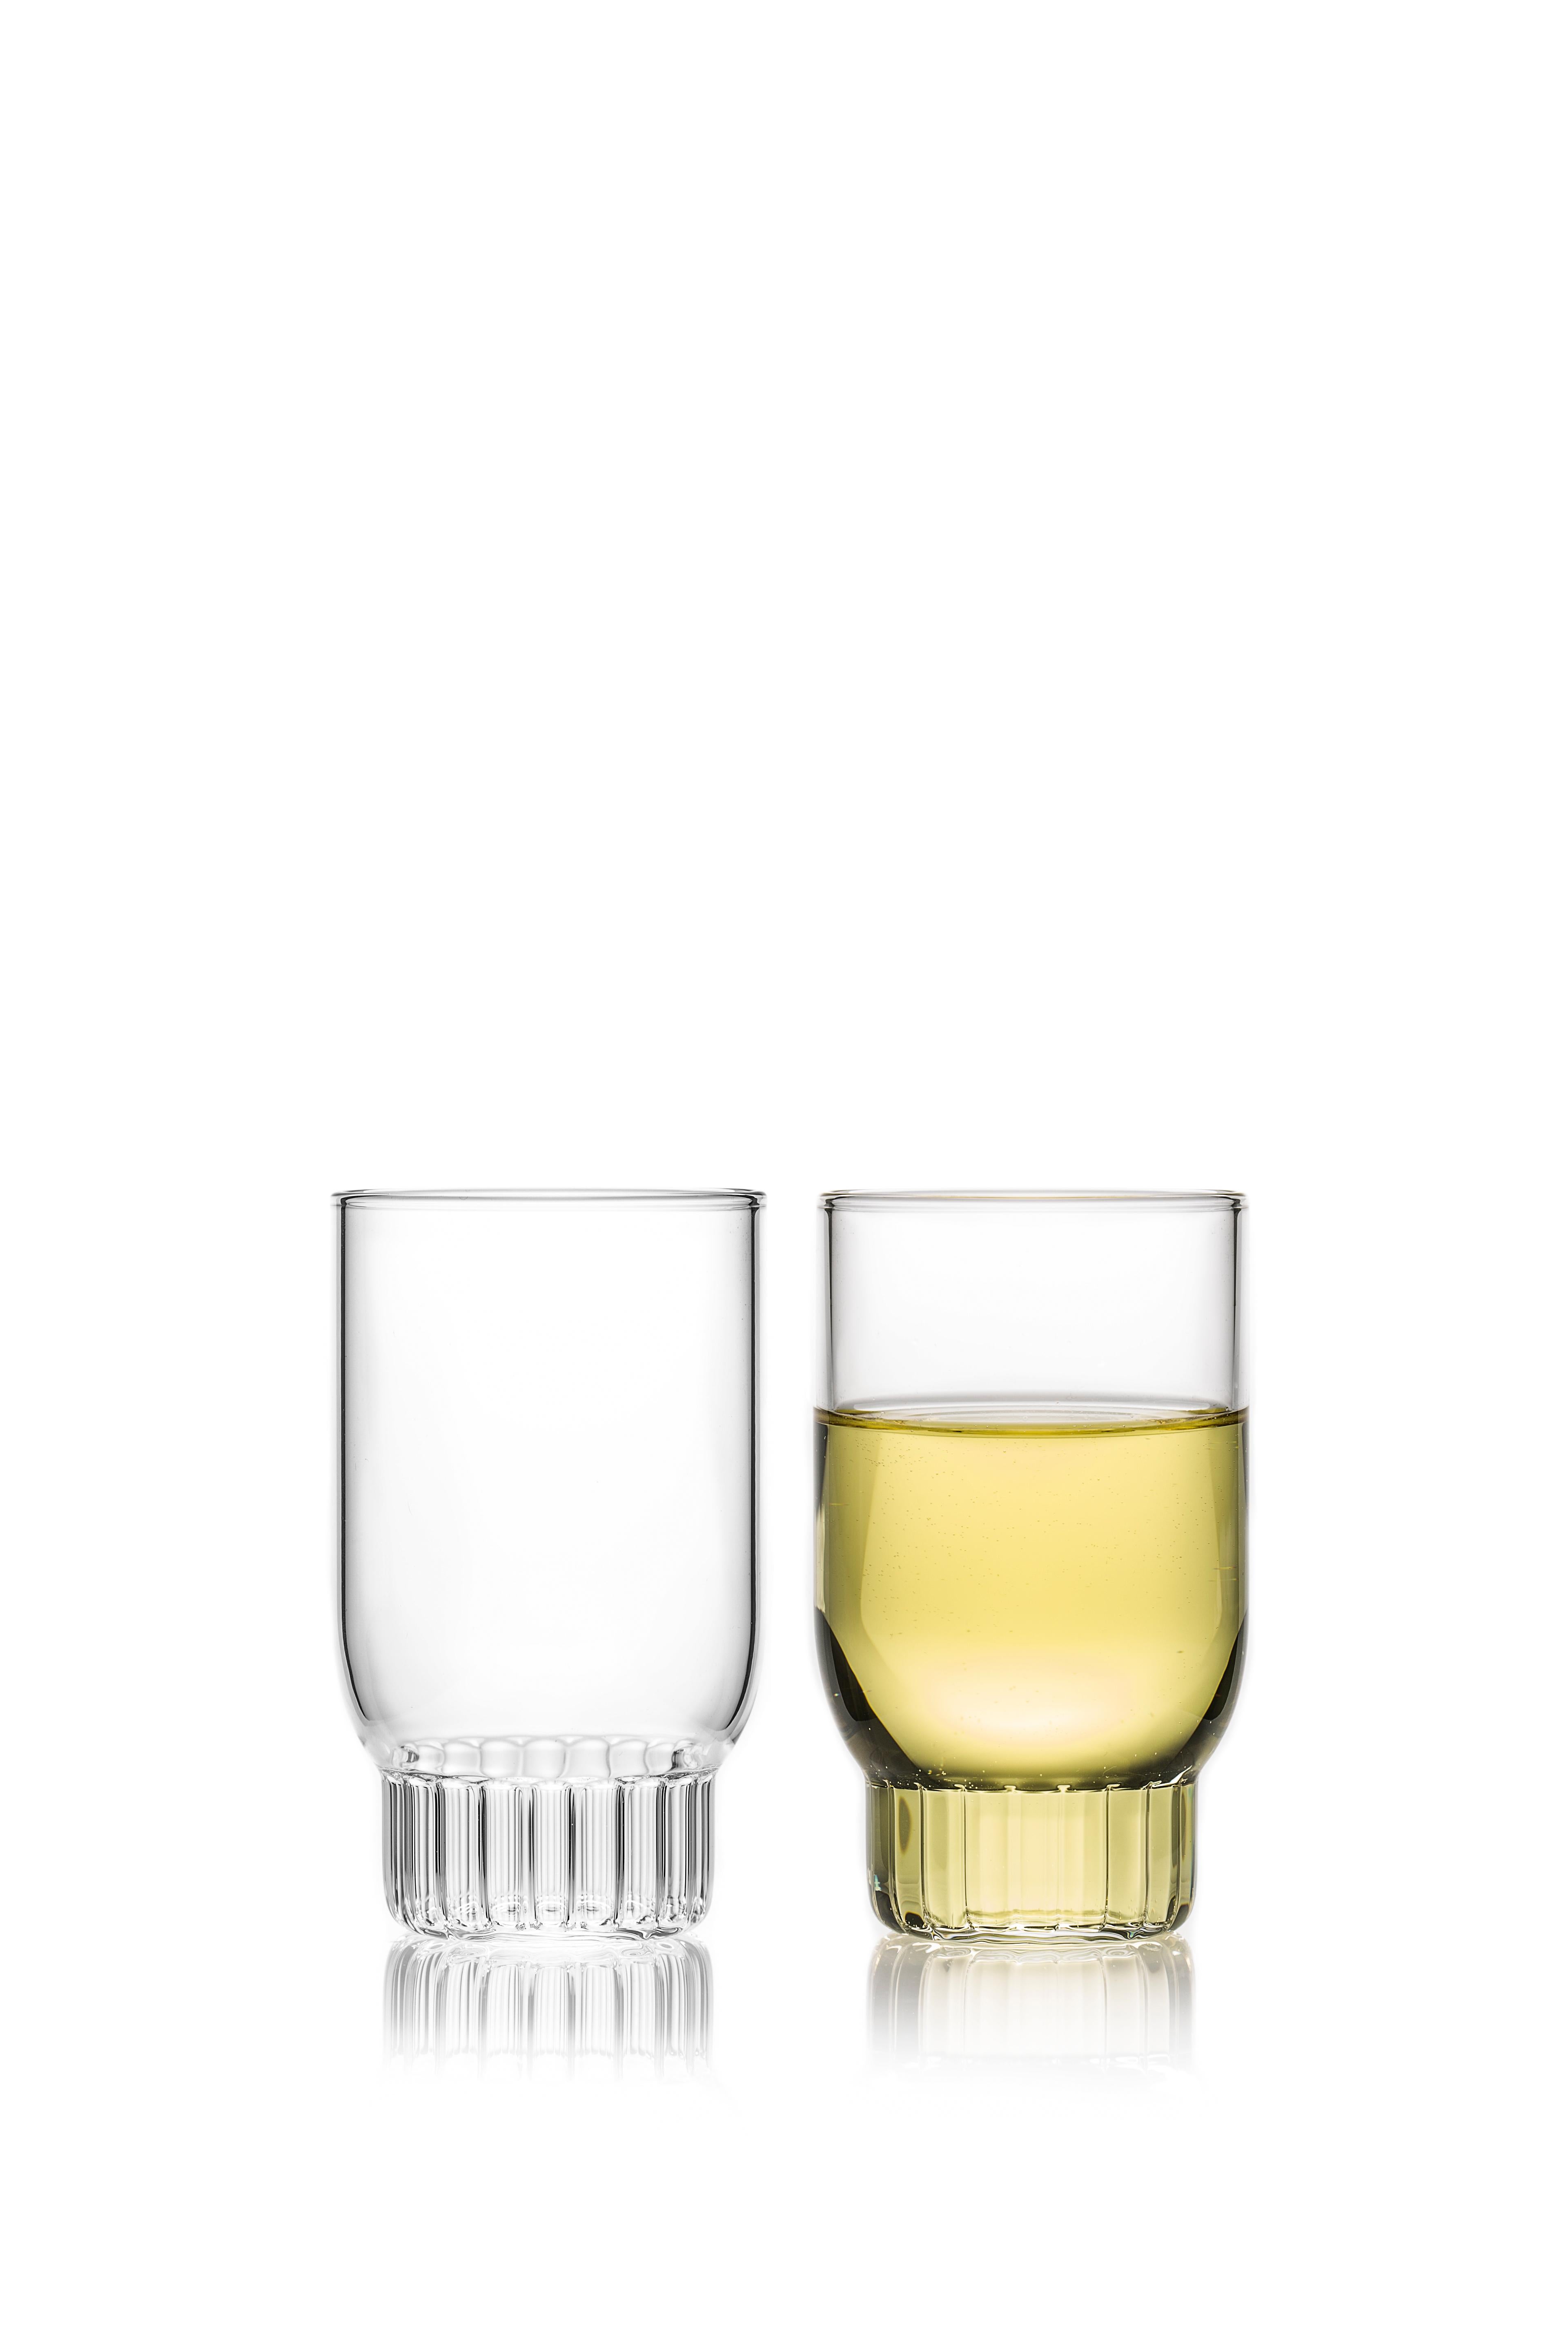 Rasori kleine Gläser, Satz mit zwei Gläsern

Wie die Lieblingsstraße der Designerin in Mailand, ihrer zweiten Heimat, sind die klaren, tschechischen, zeitgenössischen Gläser Rasori Small eine spielerische und delikate Kombination aus MATERIAL und